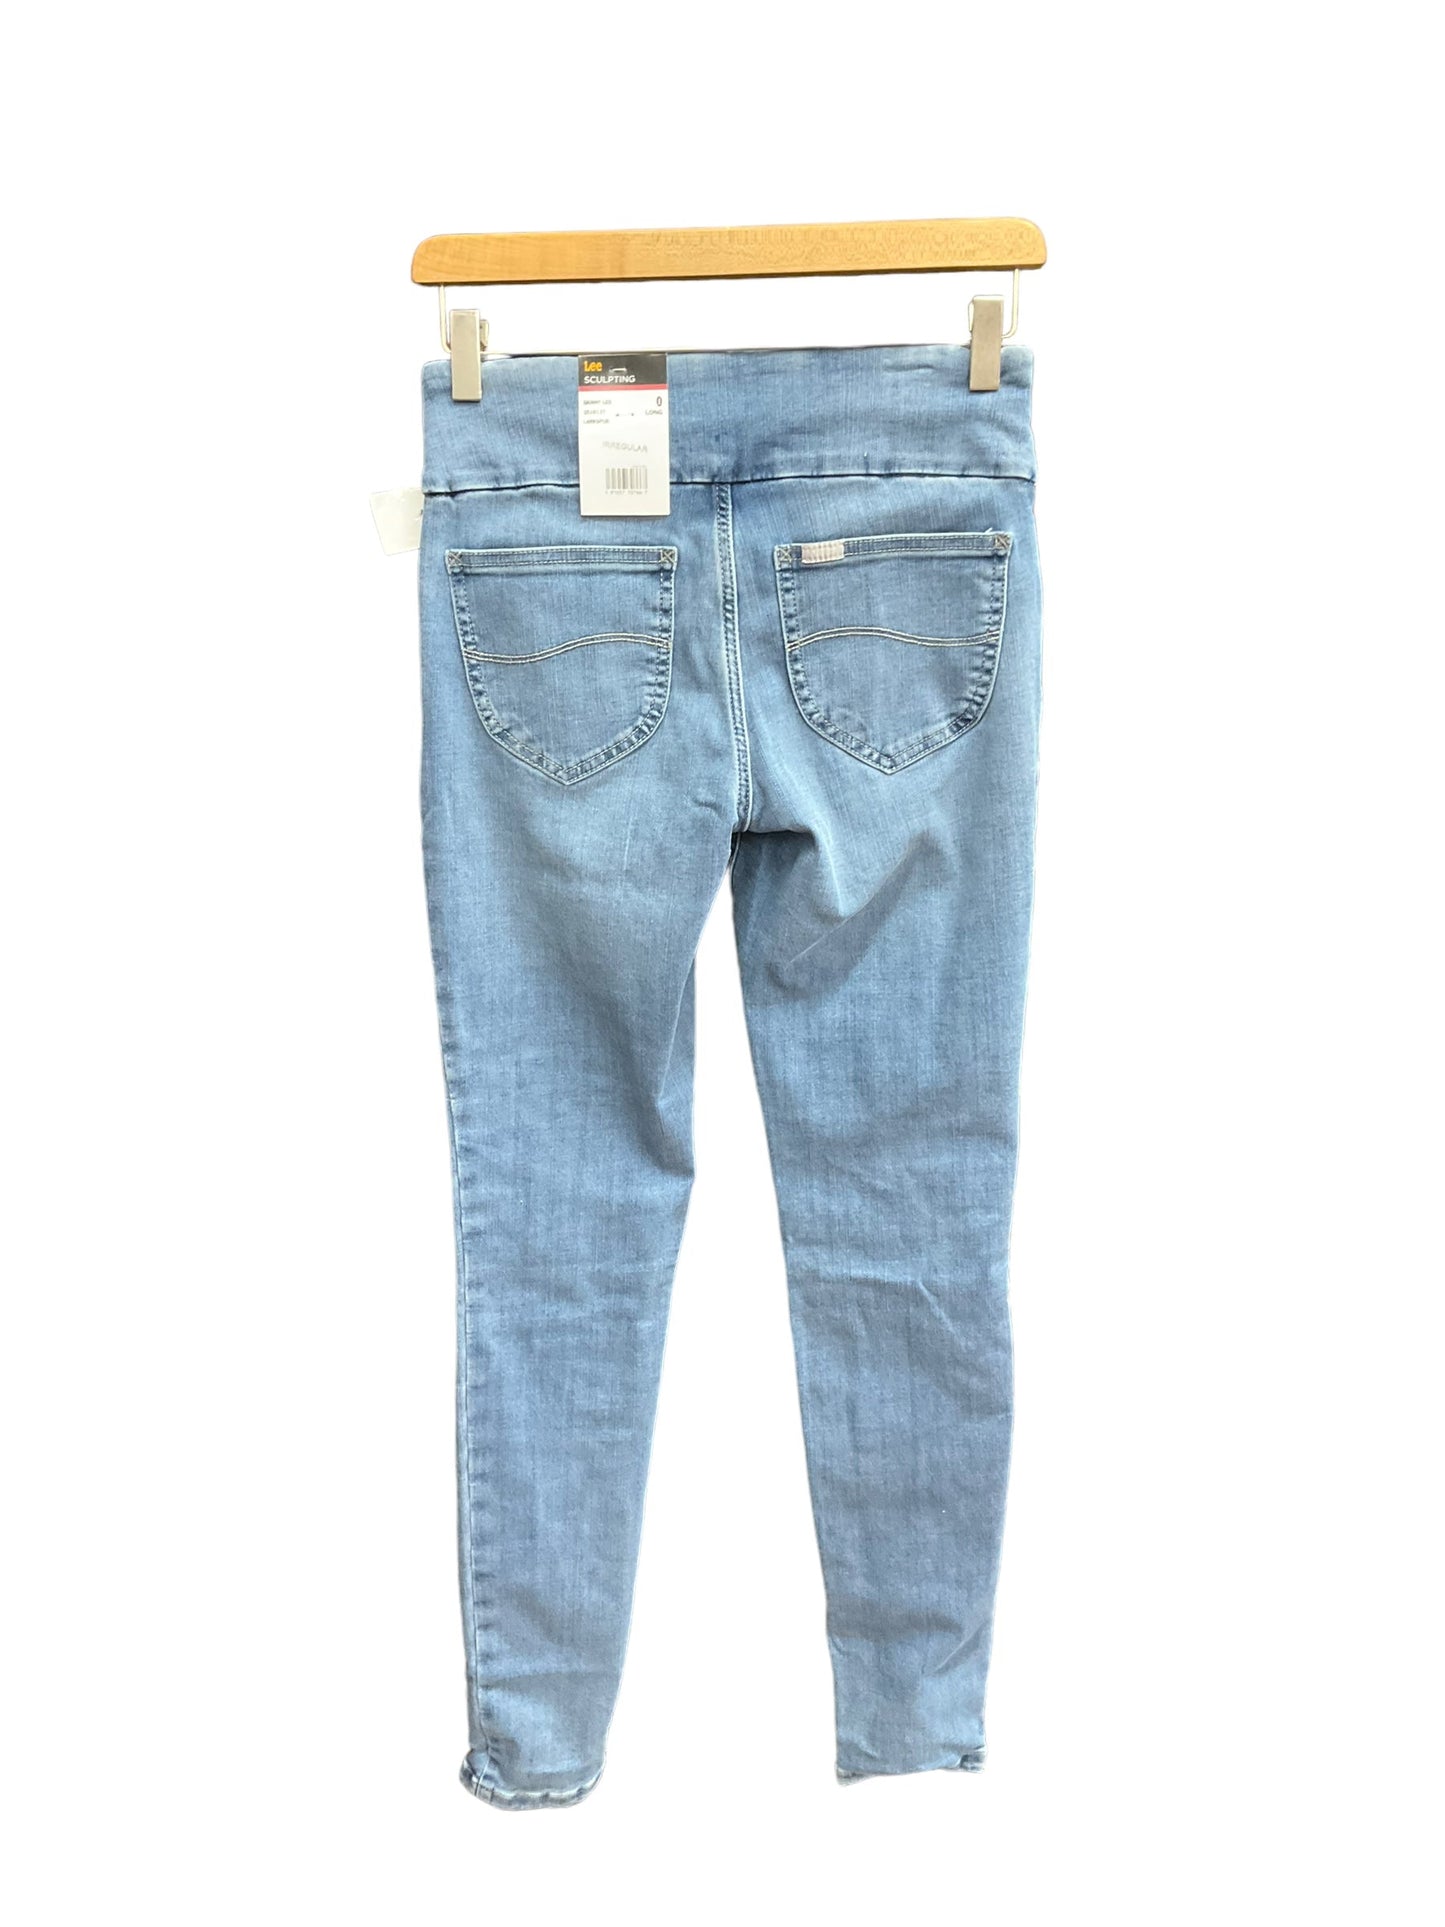 Denim Jeans Skinny Lee, Size 0